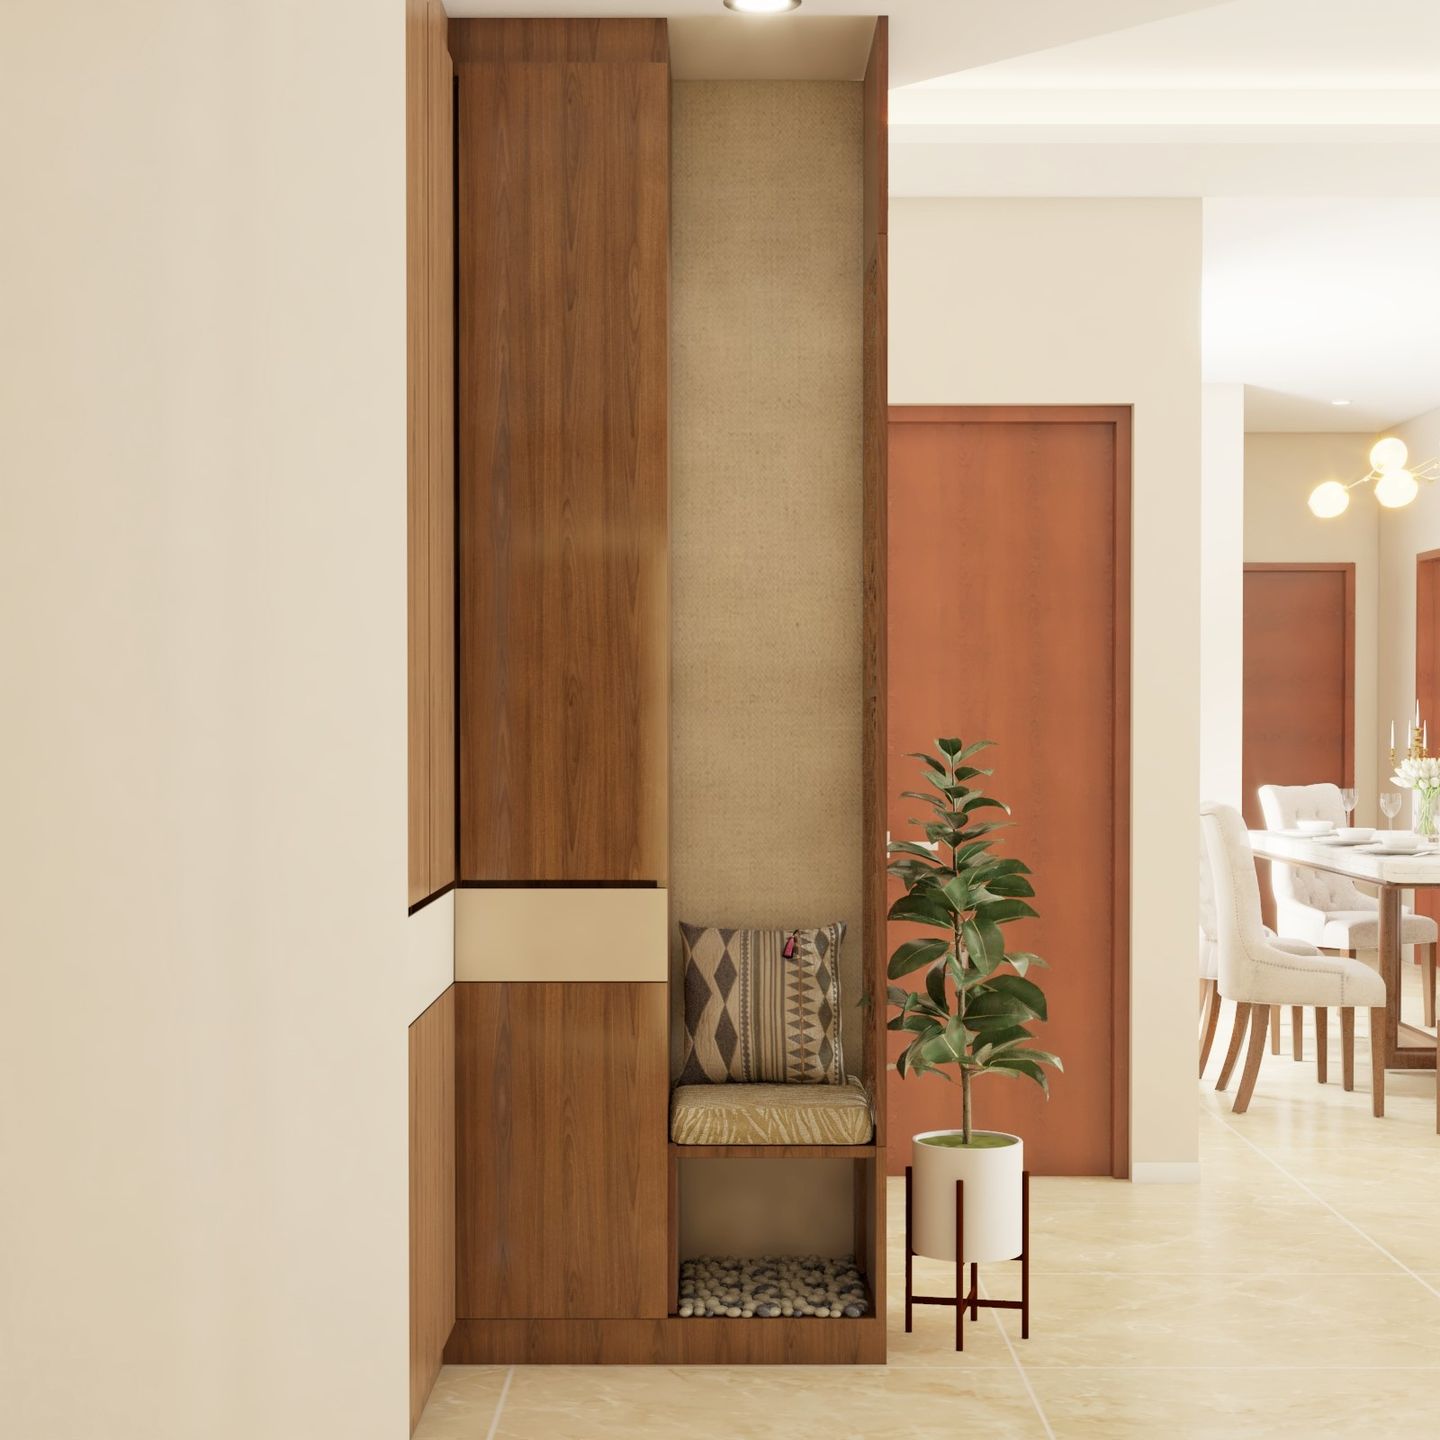 Compact Foyer Design Idea - Livspace